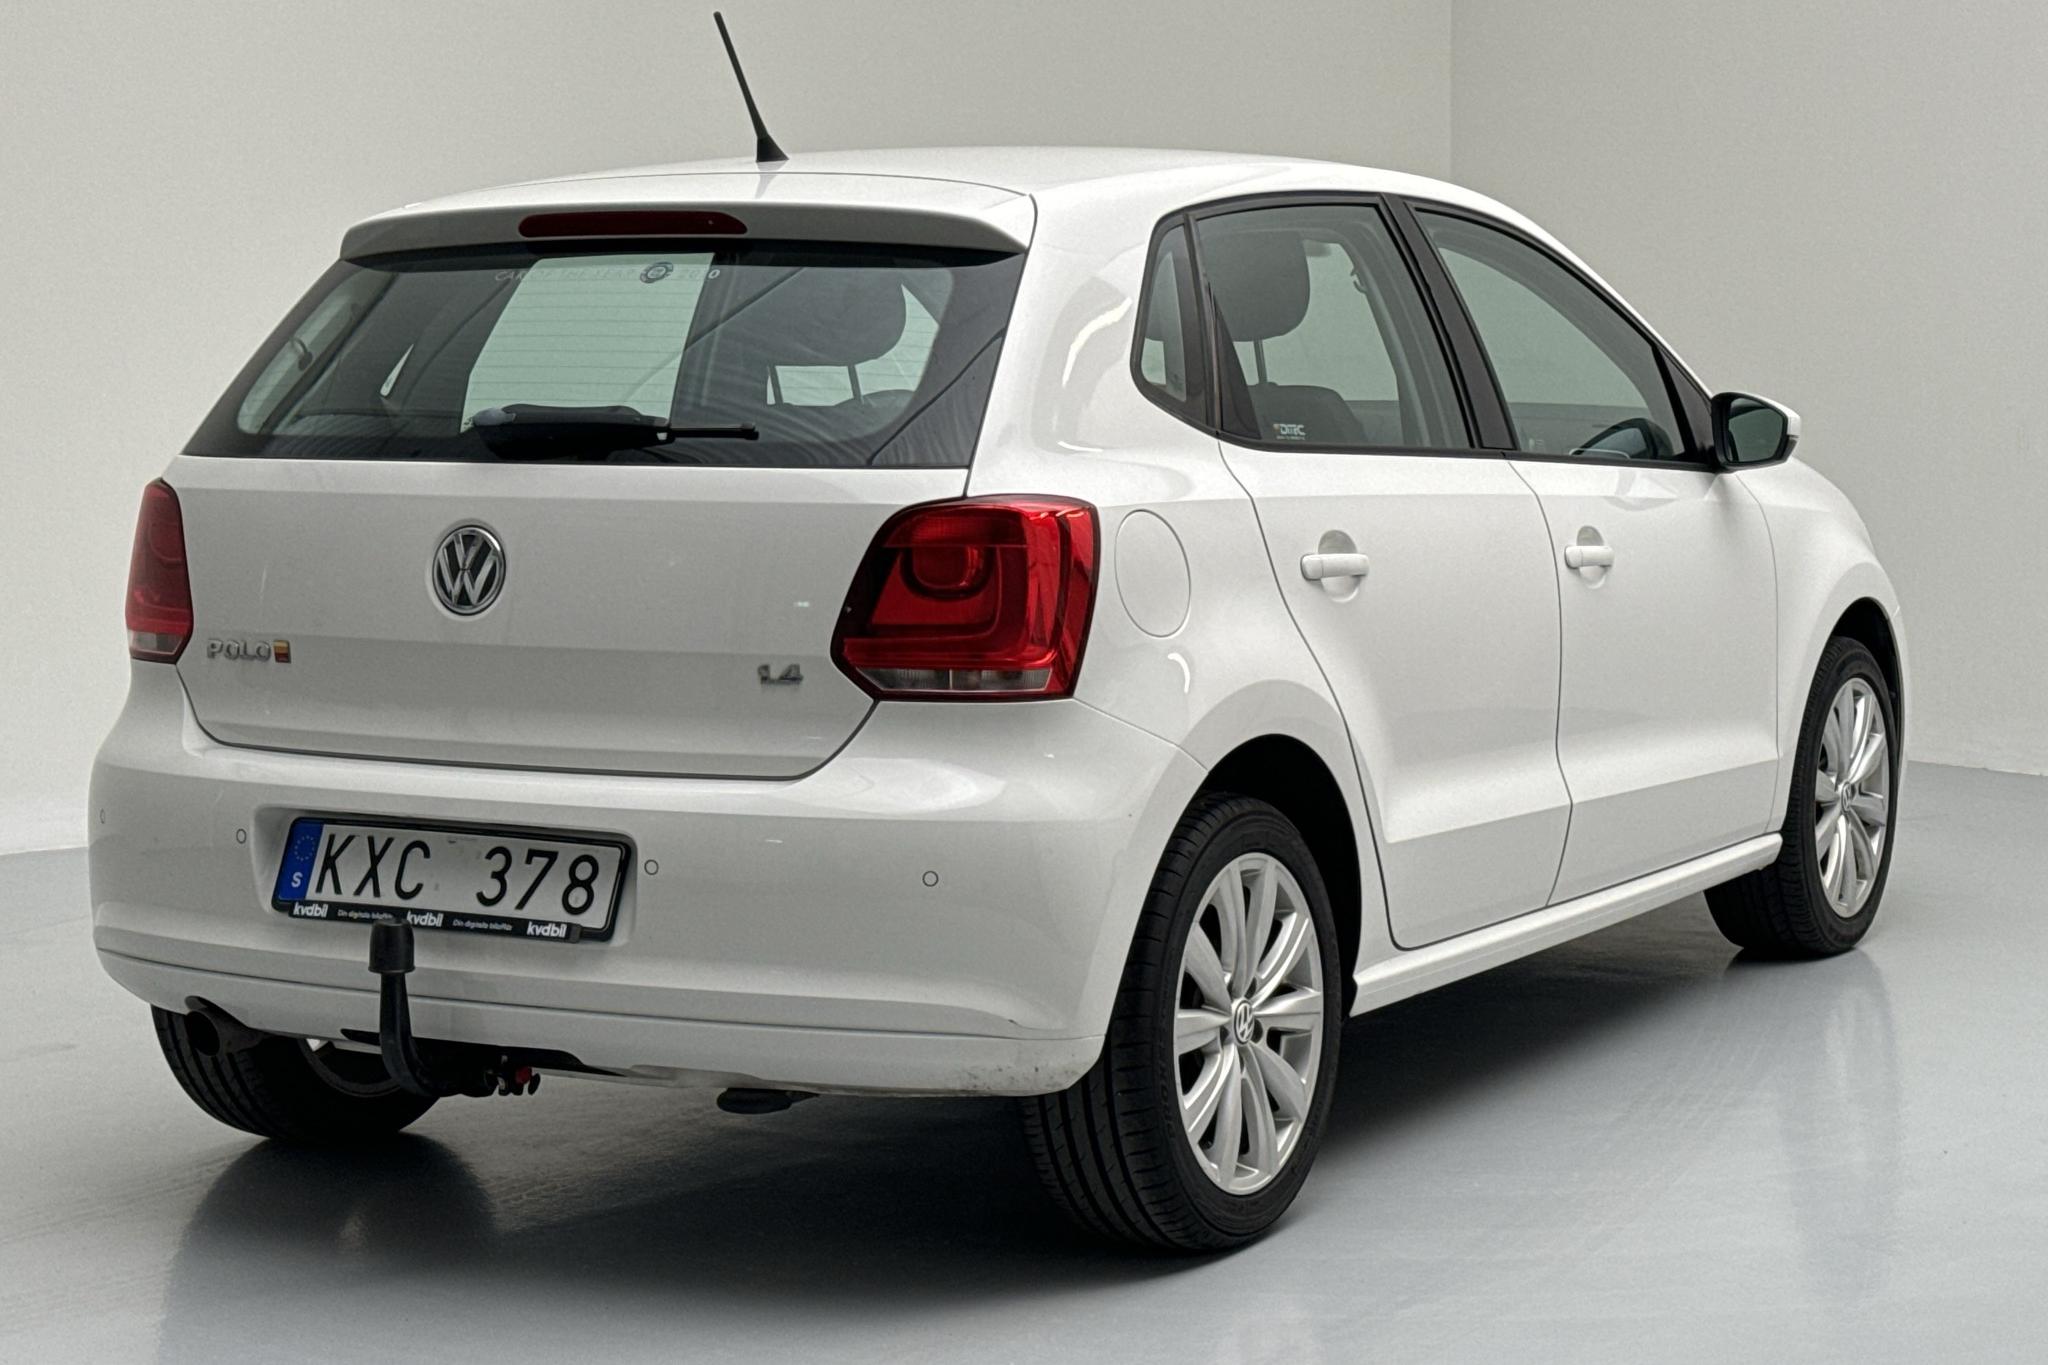 VW Polo 1.4 5dr (85hk) - 173 780 km - Manual - white - 2011